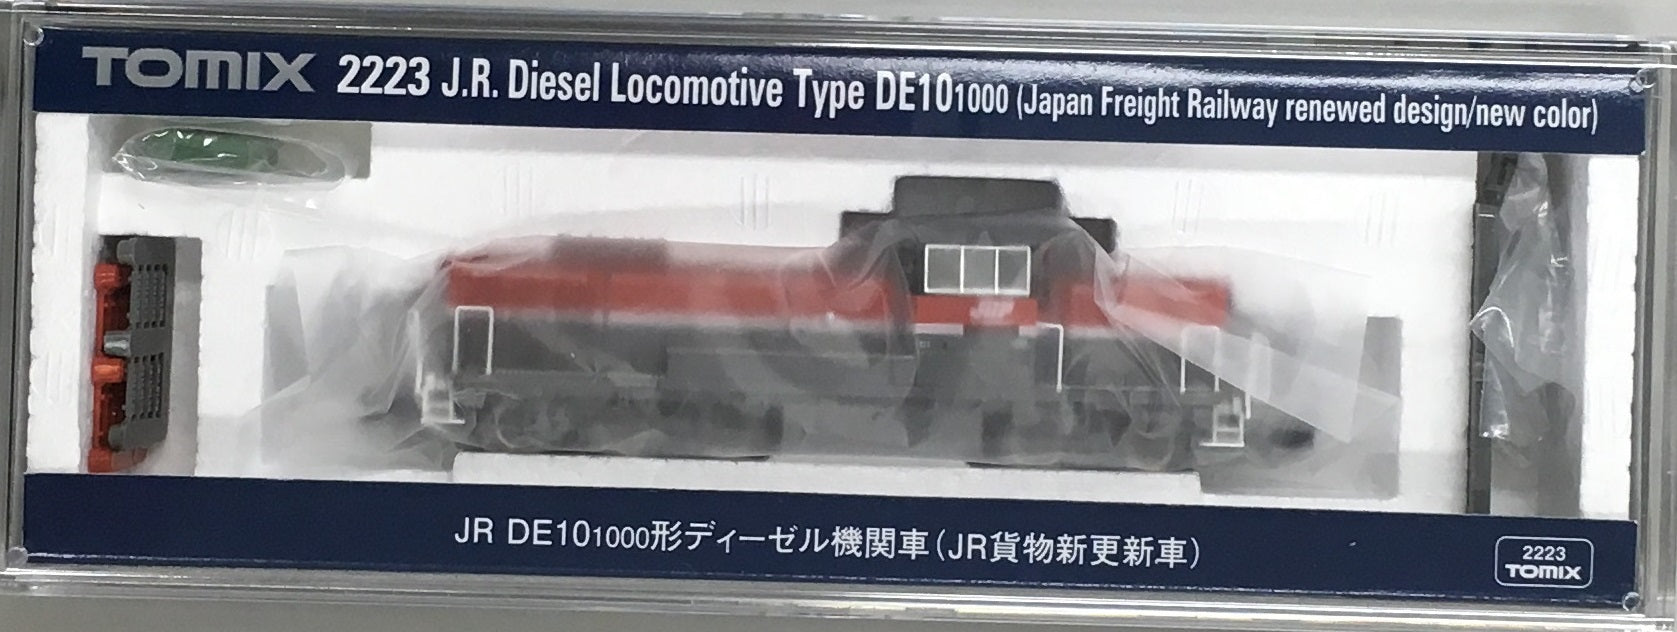 2223 J.R. Diesel Locomotive TypeDE10-1000 Japan Freight Railway